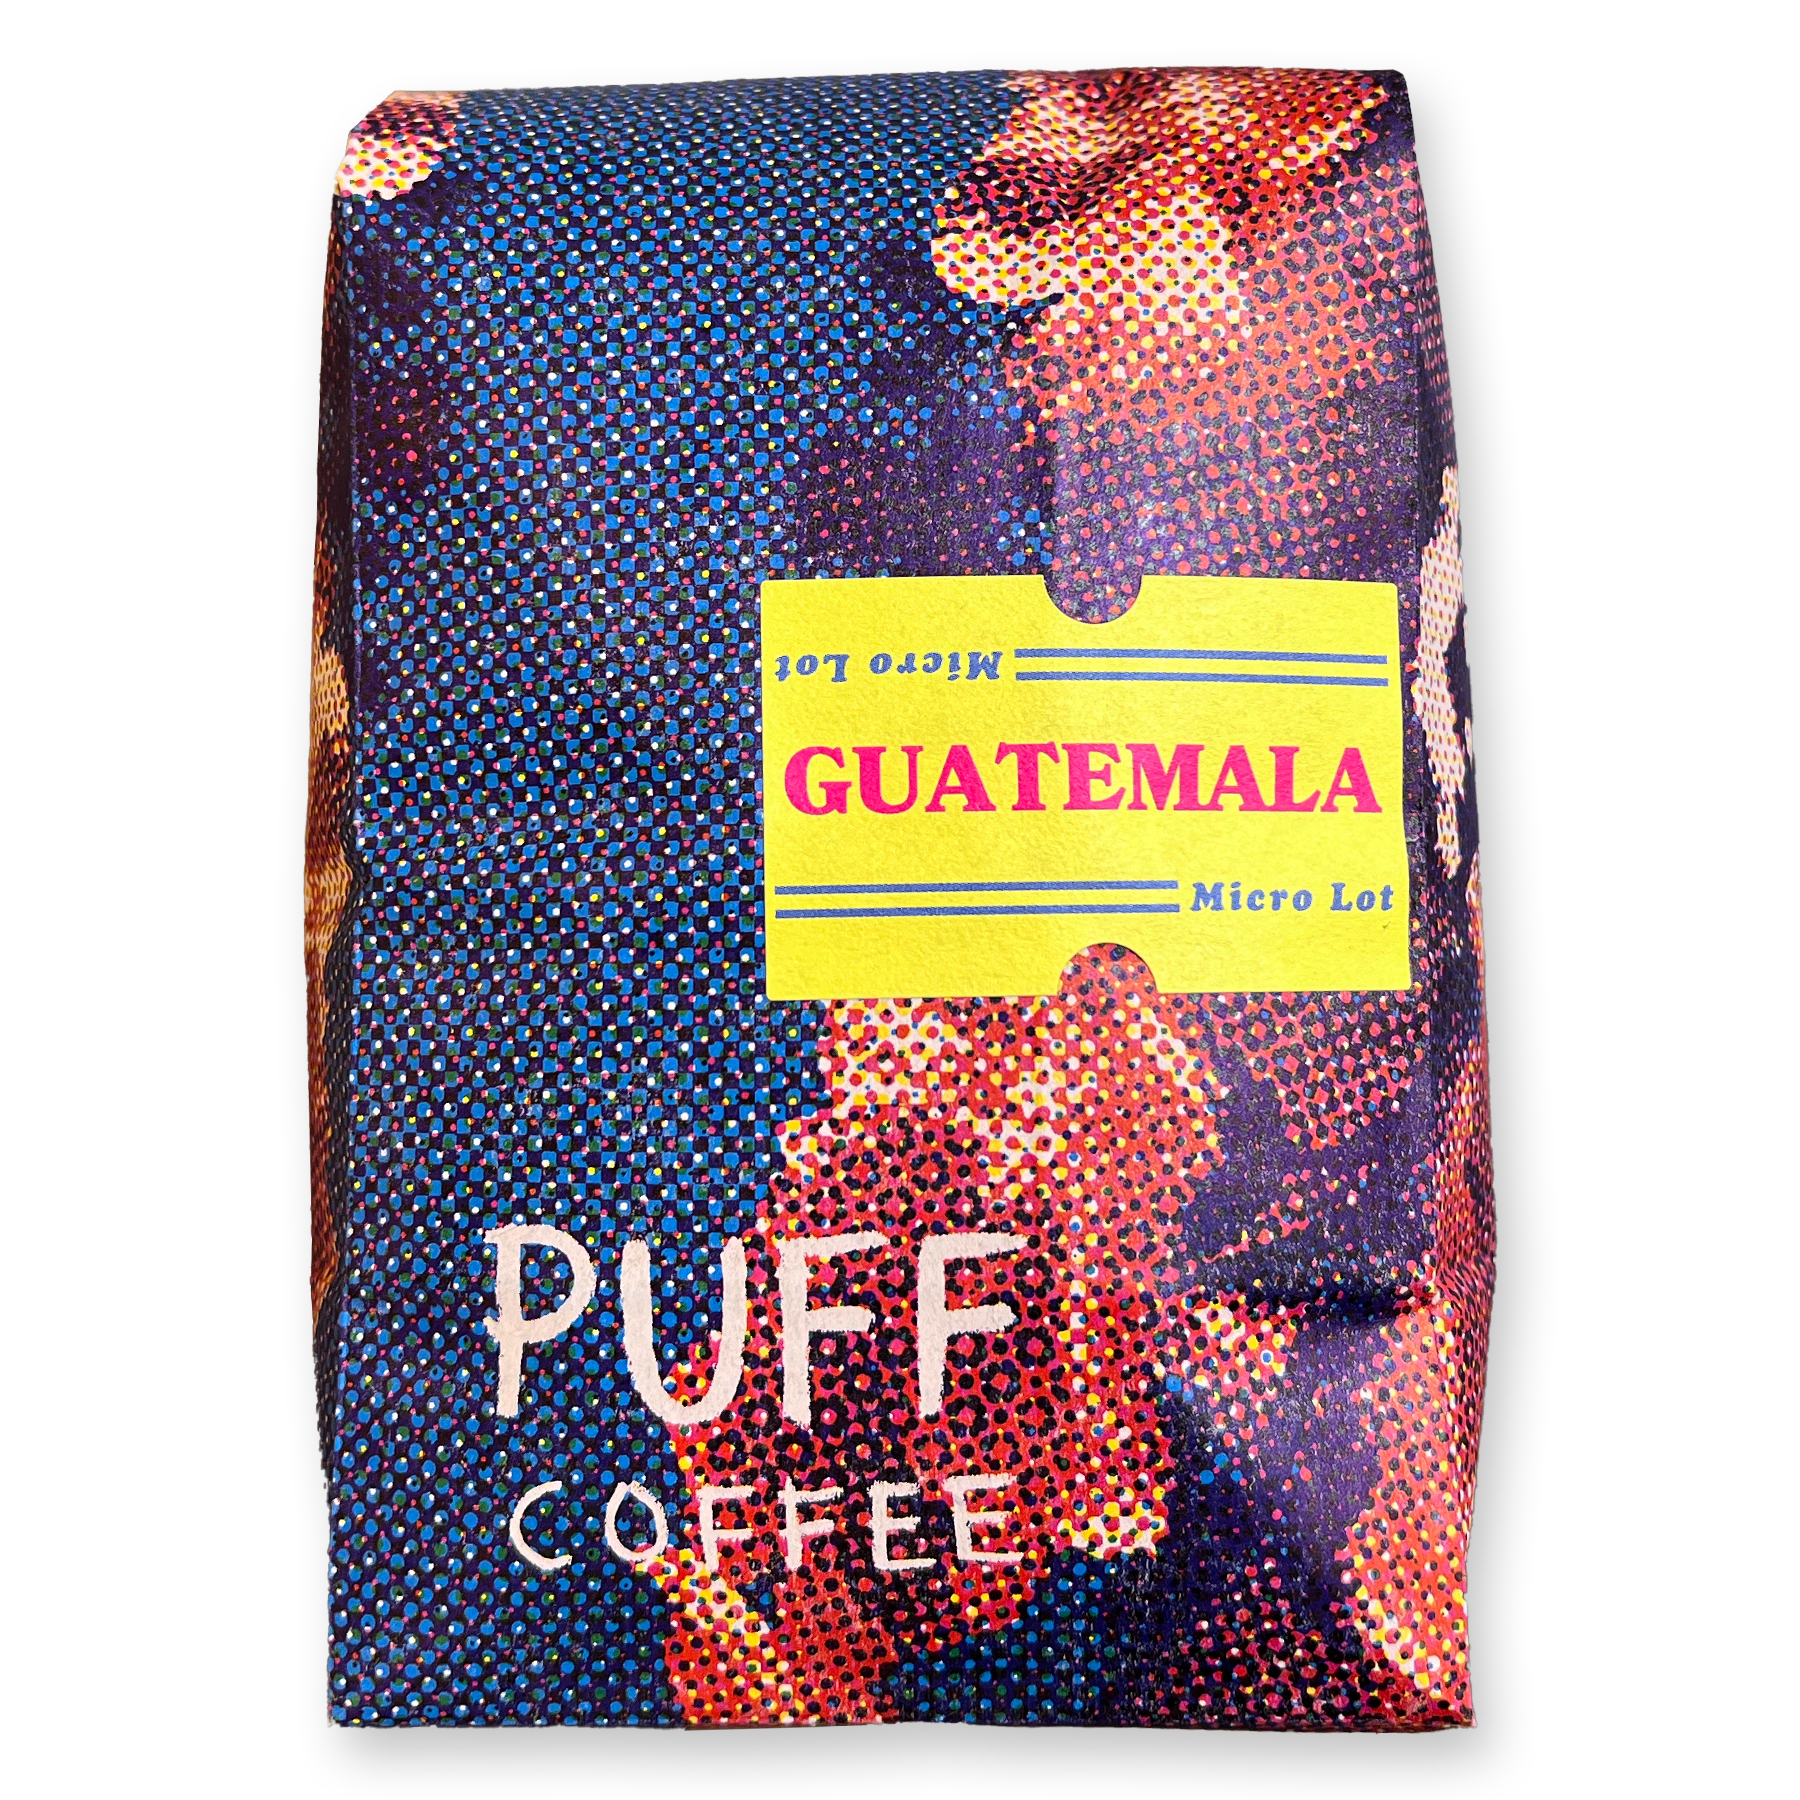 guatemala micro lot whole bean coffee from puff coffee, roasted in portland, oregon